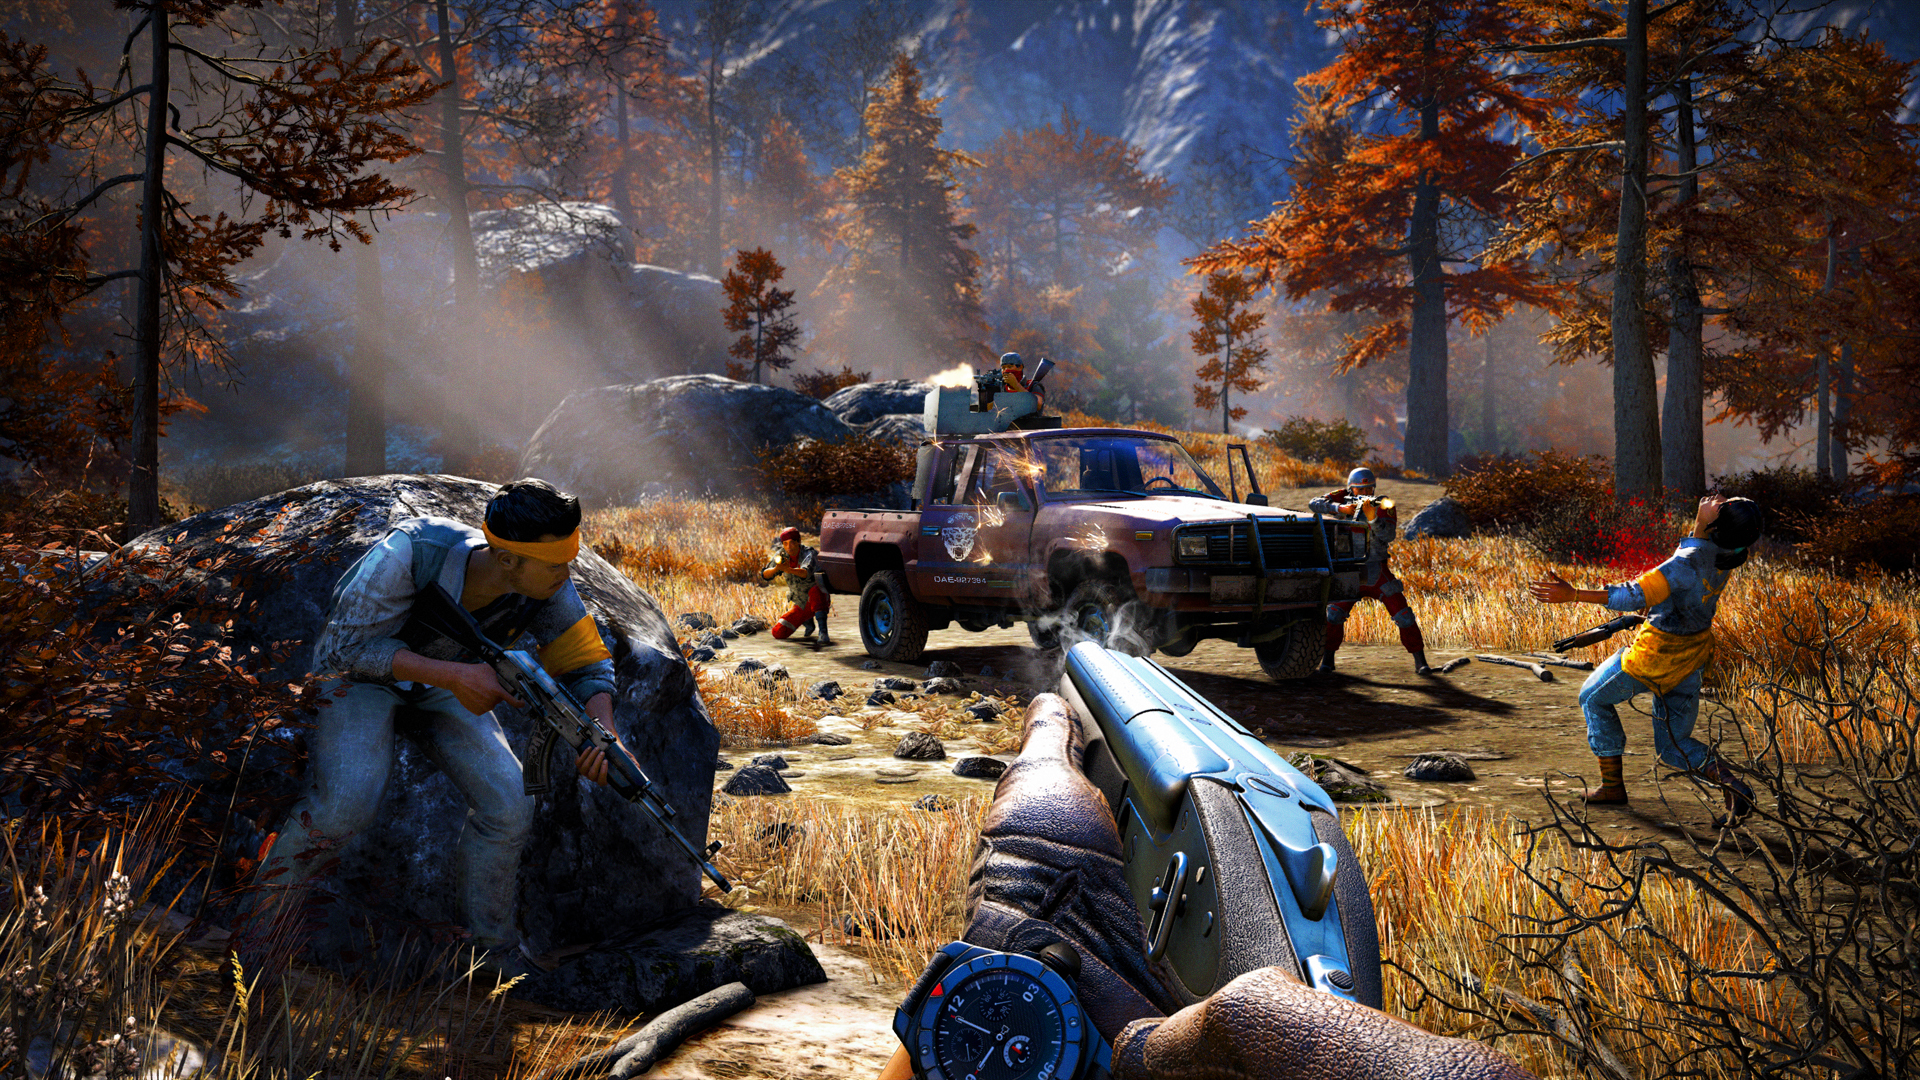 Far Cry 4 screenshot